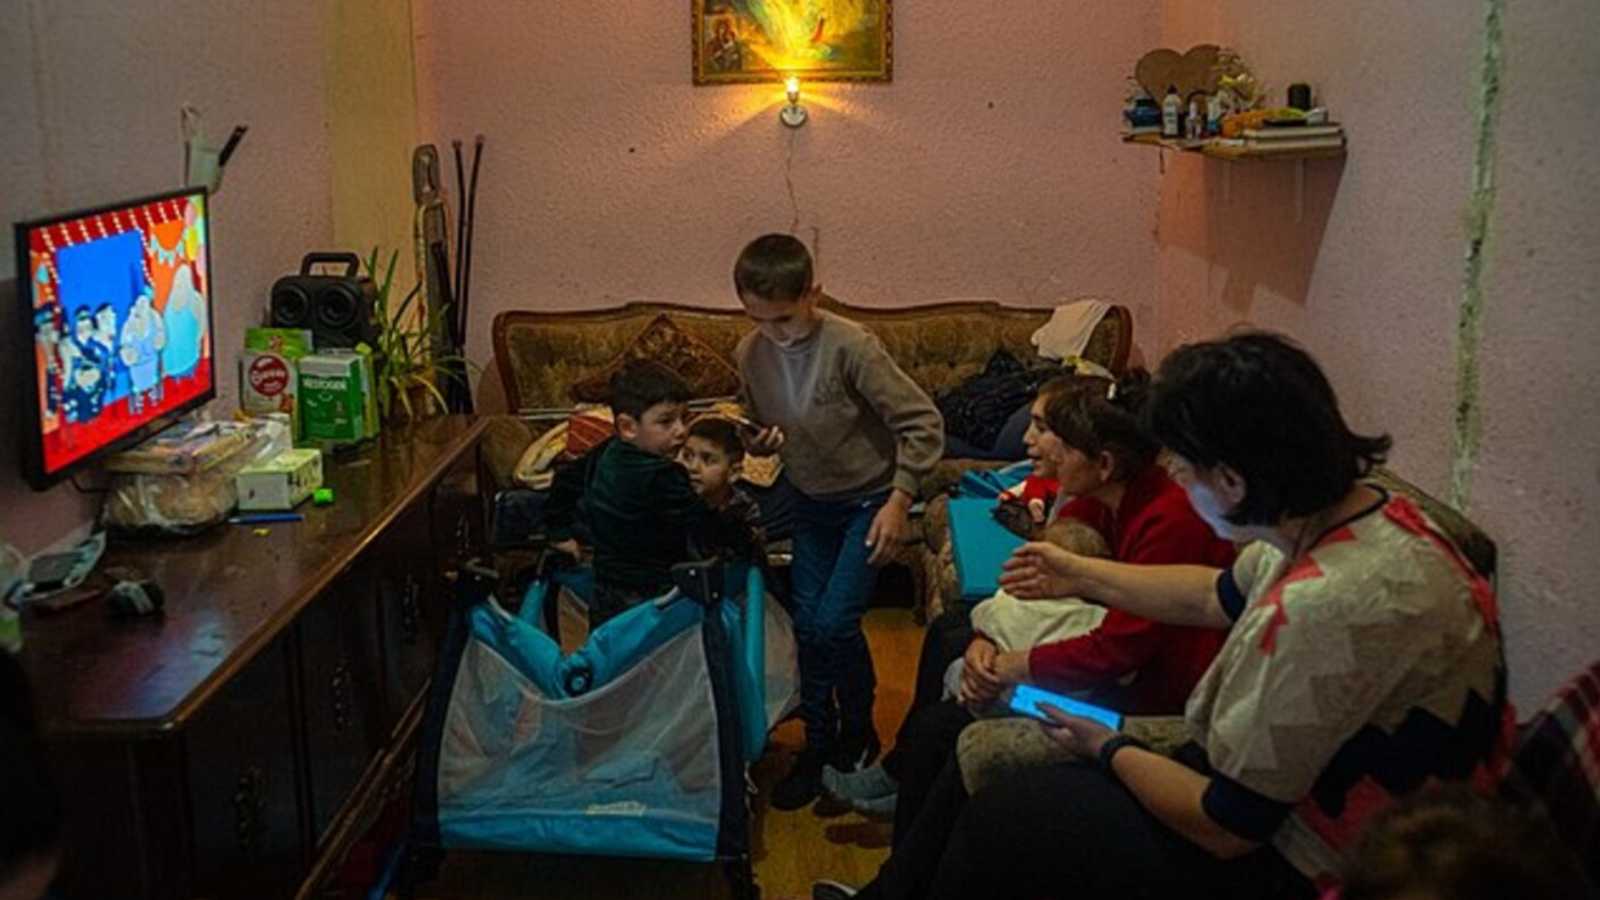 andre ukraine forskelsbehandling menneskerettigheder armeniere